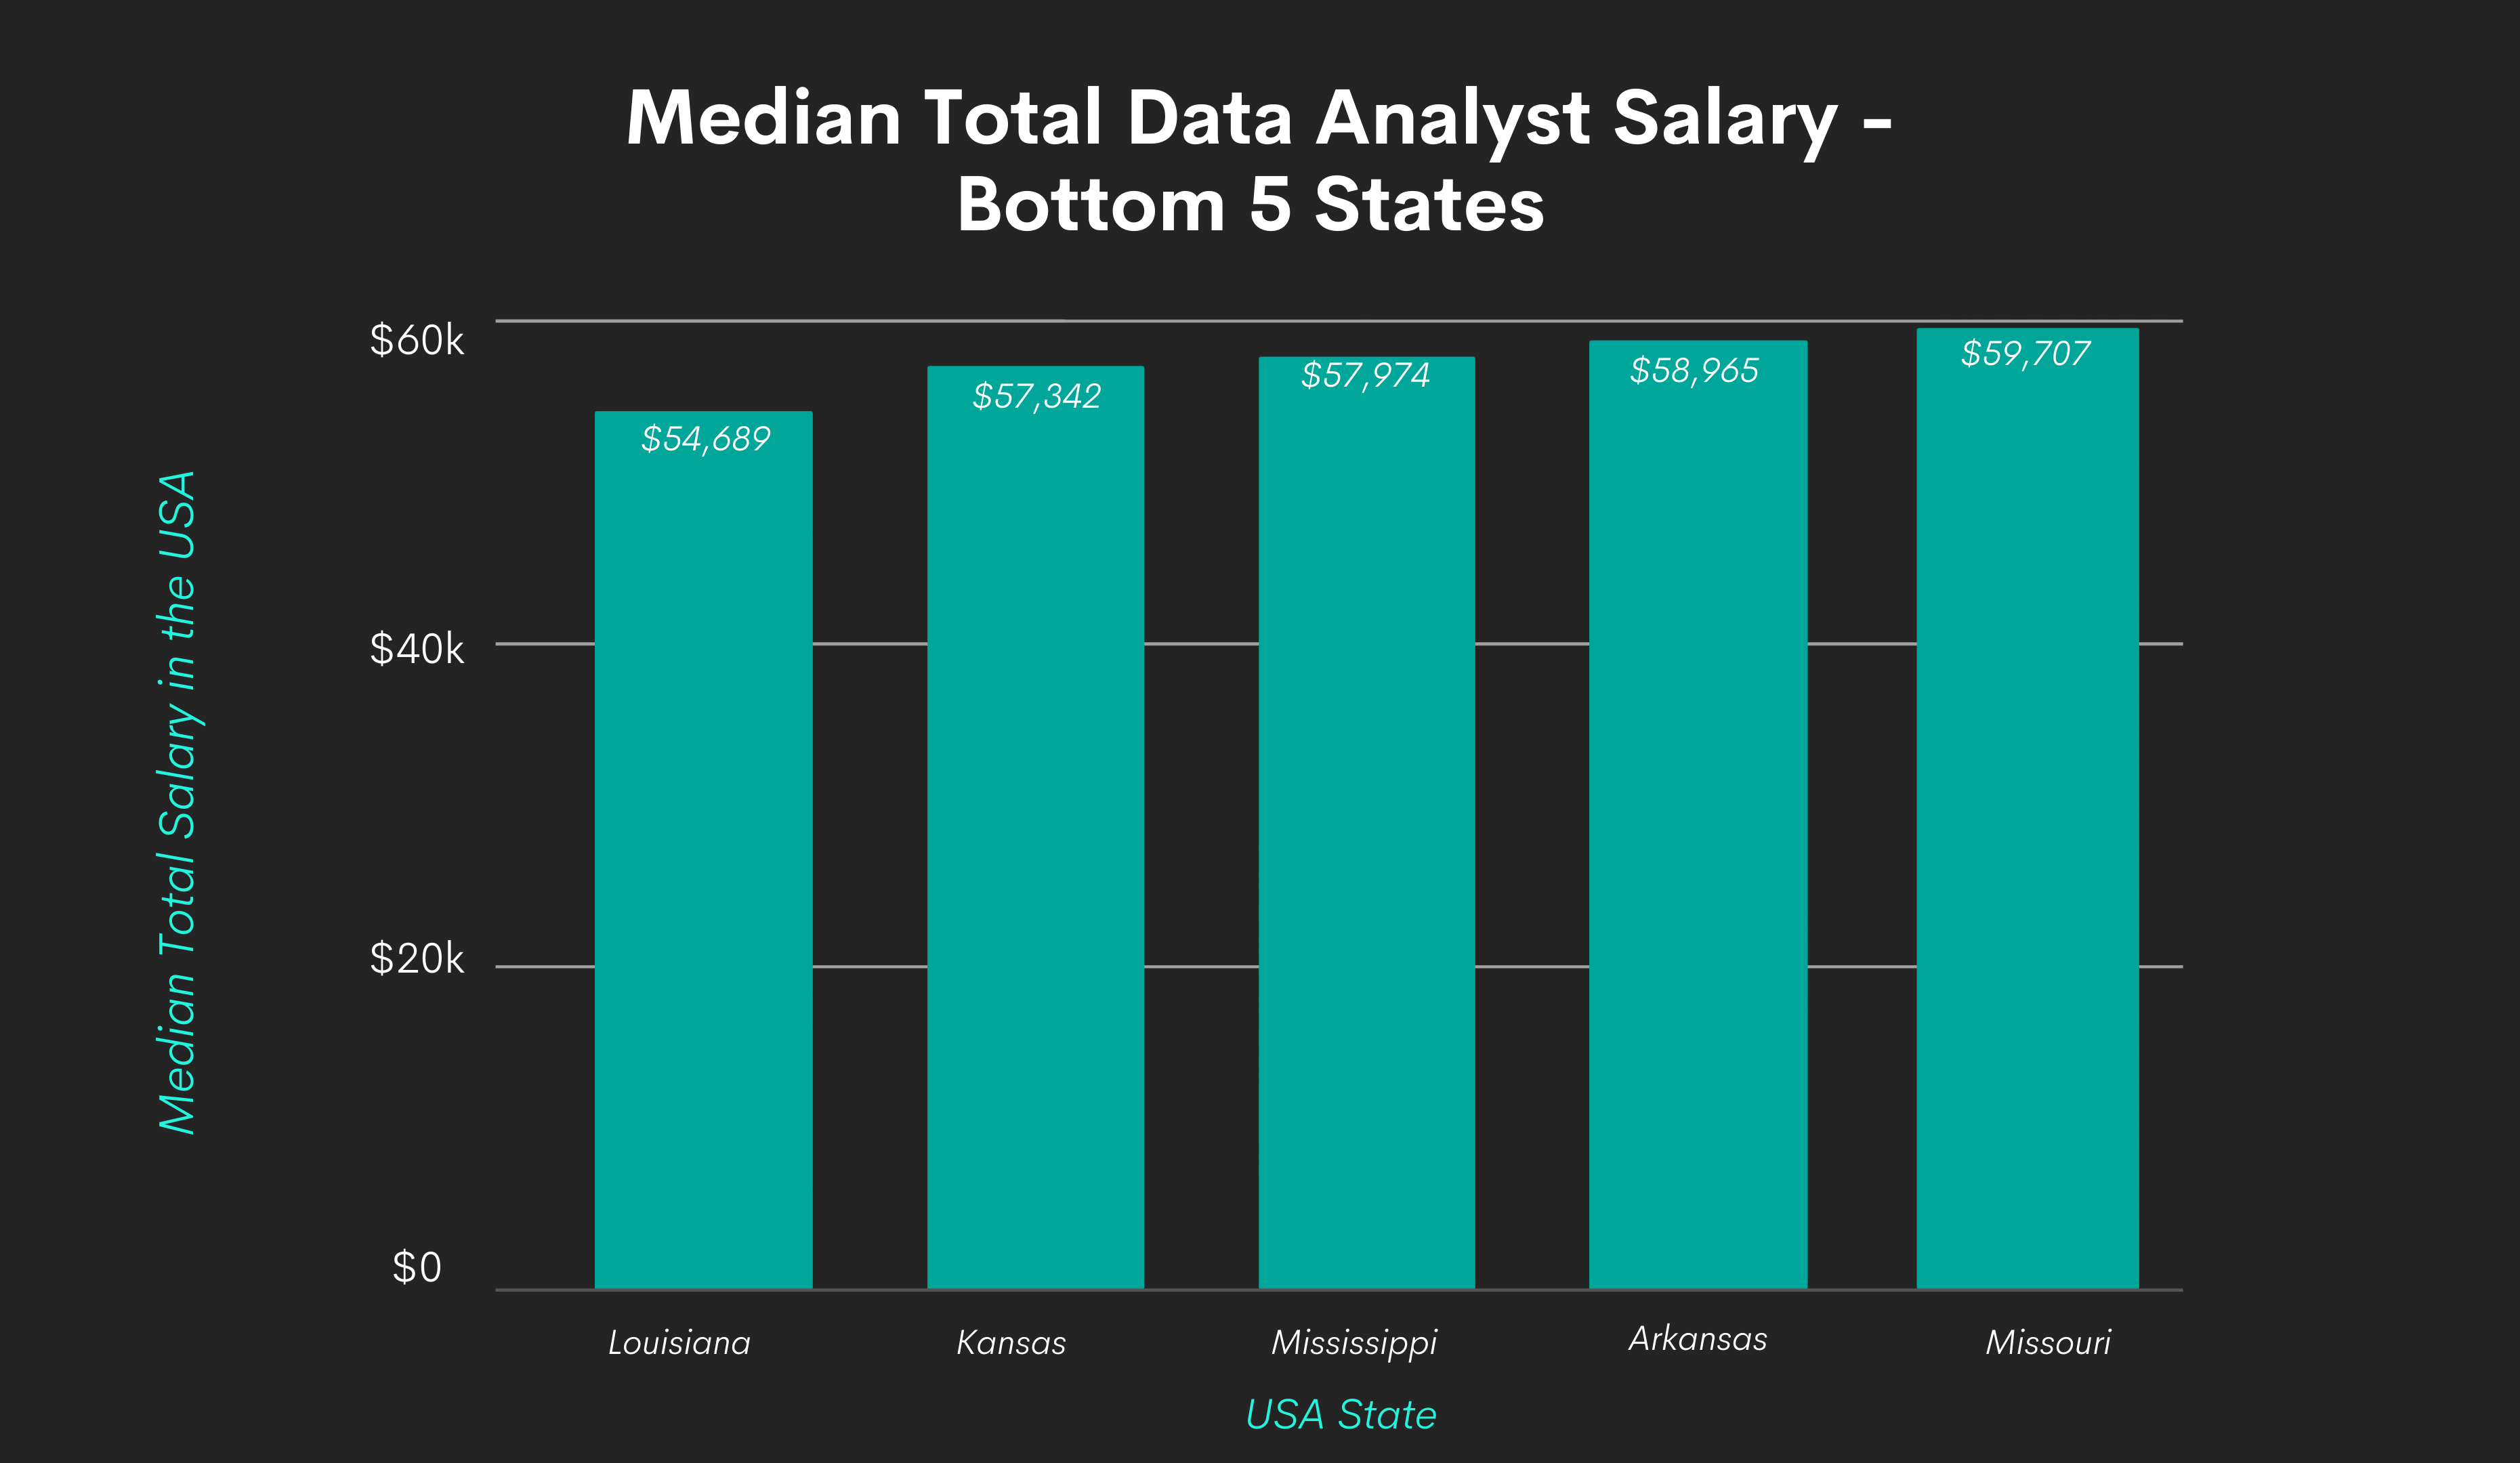 Data analyst salary by bottom 5 states